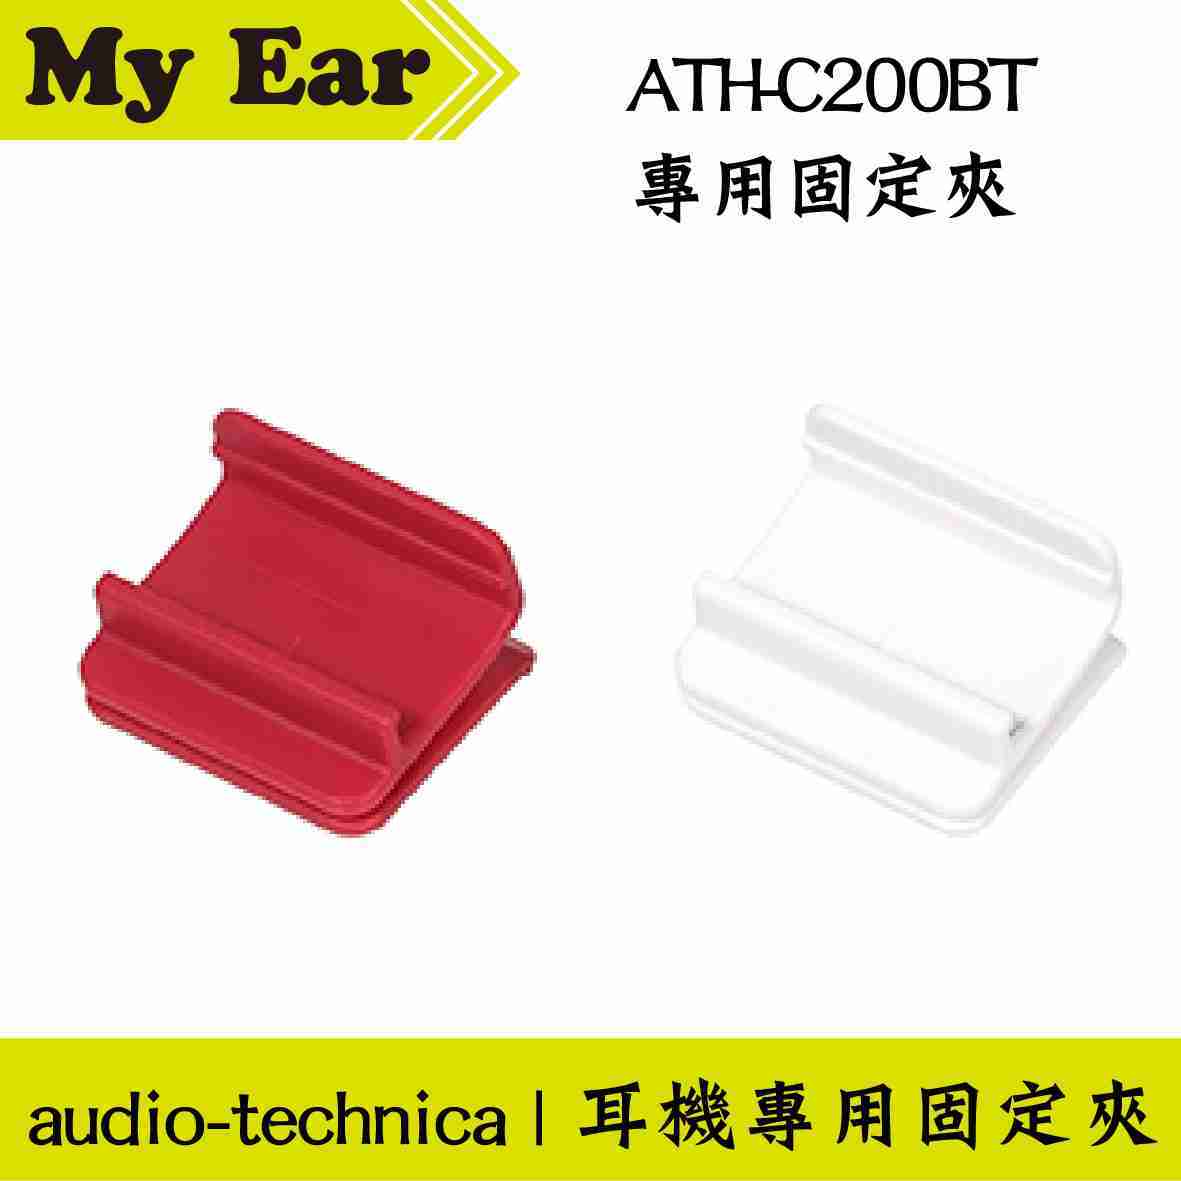 鐵三角 適用 ATH-C200BT 固定夾 耳機 專用夾 | My Ear 耳機專門店